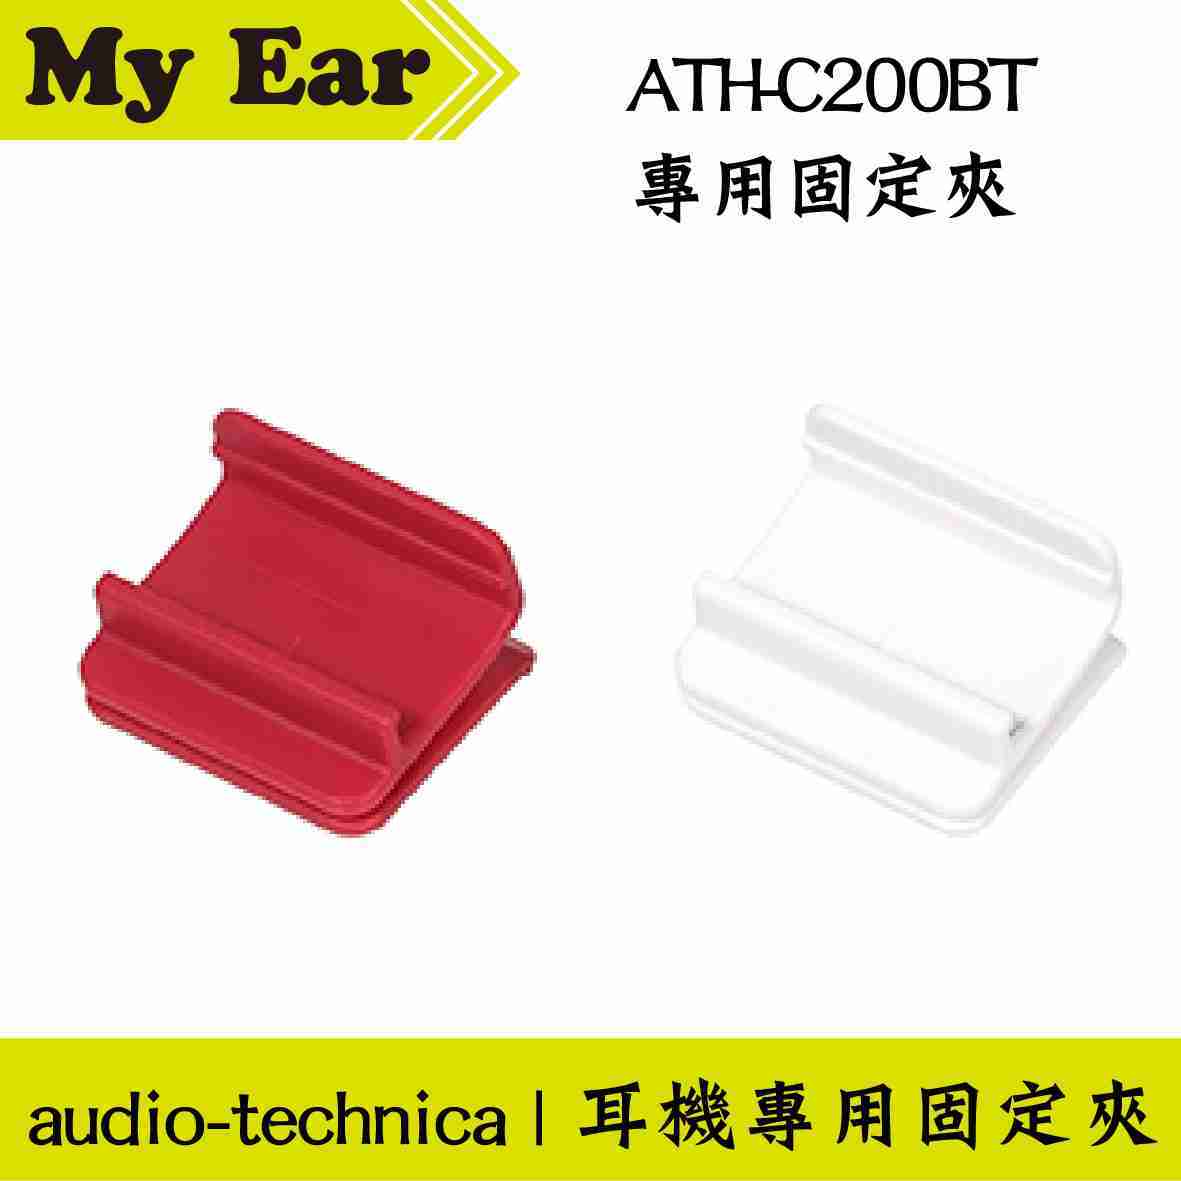 鐵三角 適用 ATH-C200BT 固定夾 耳機 專用夾 | My Ear 耳機專門店